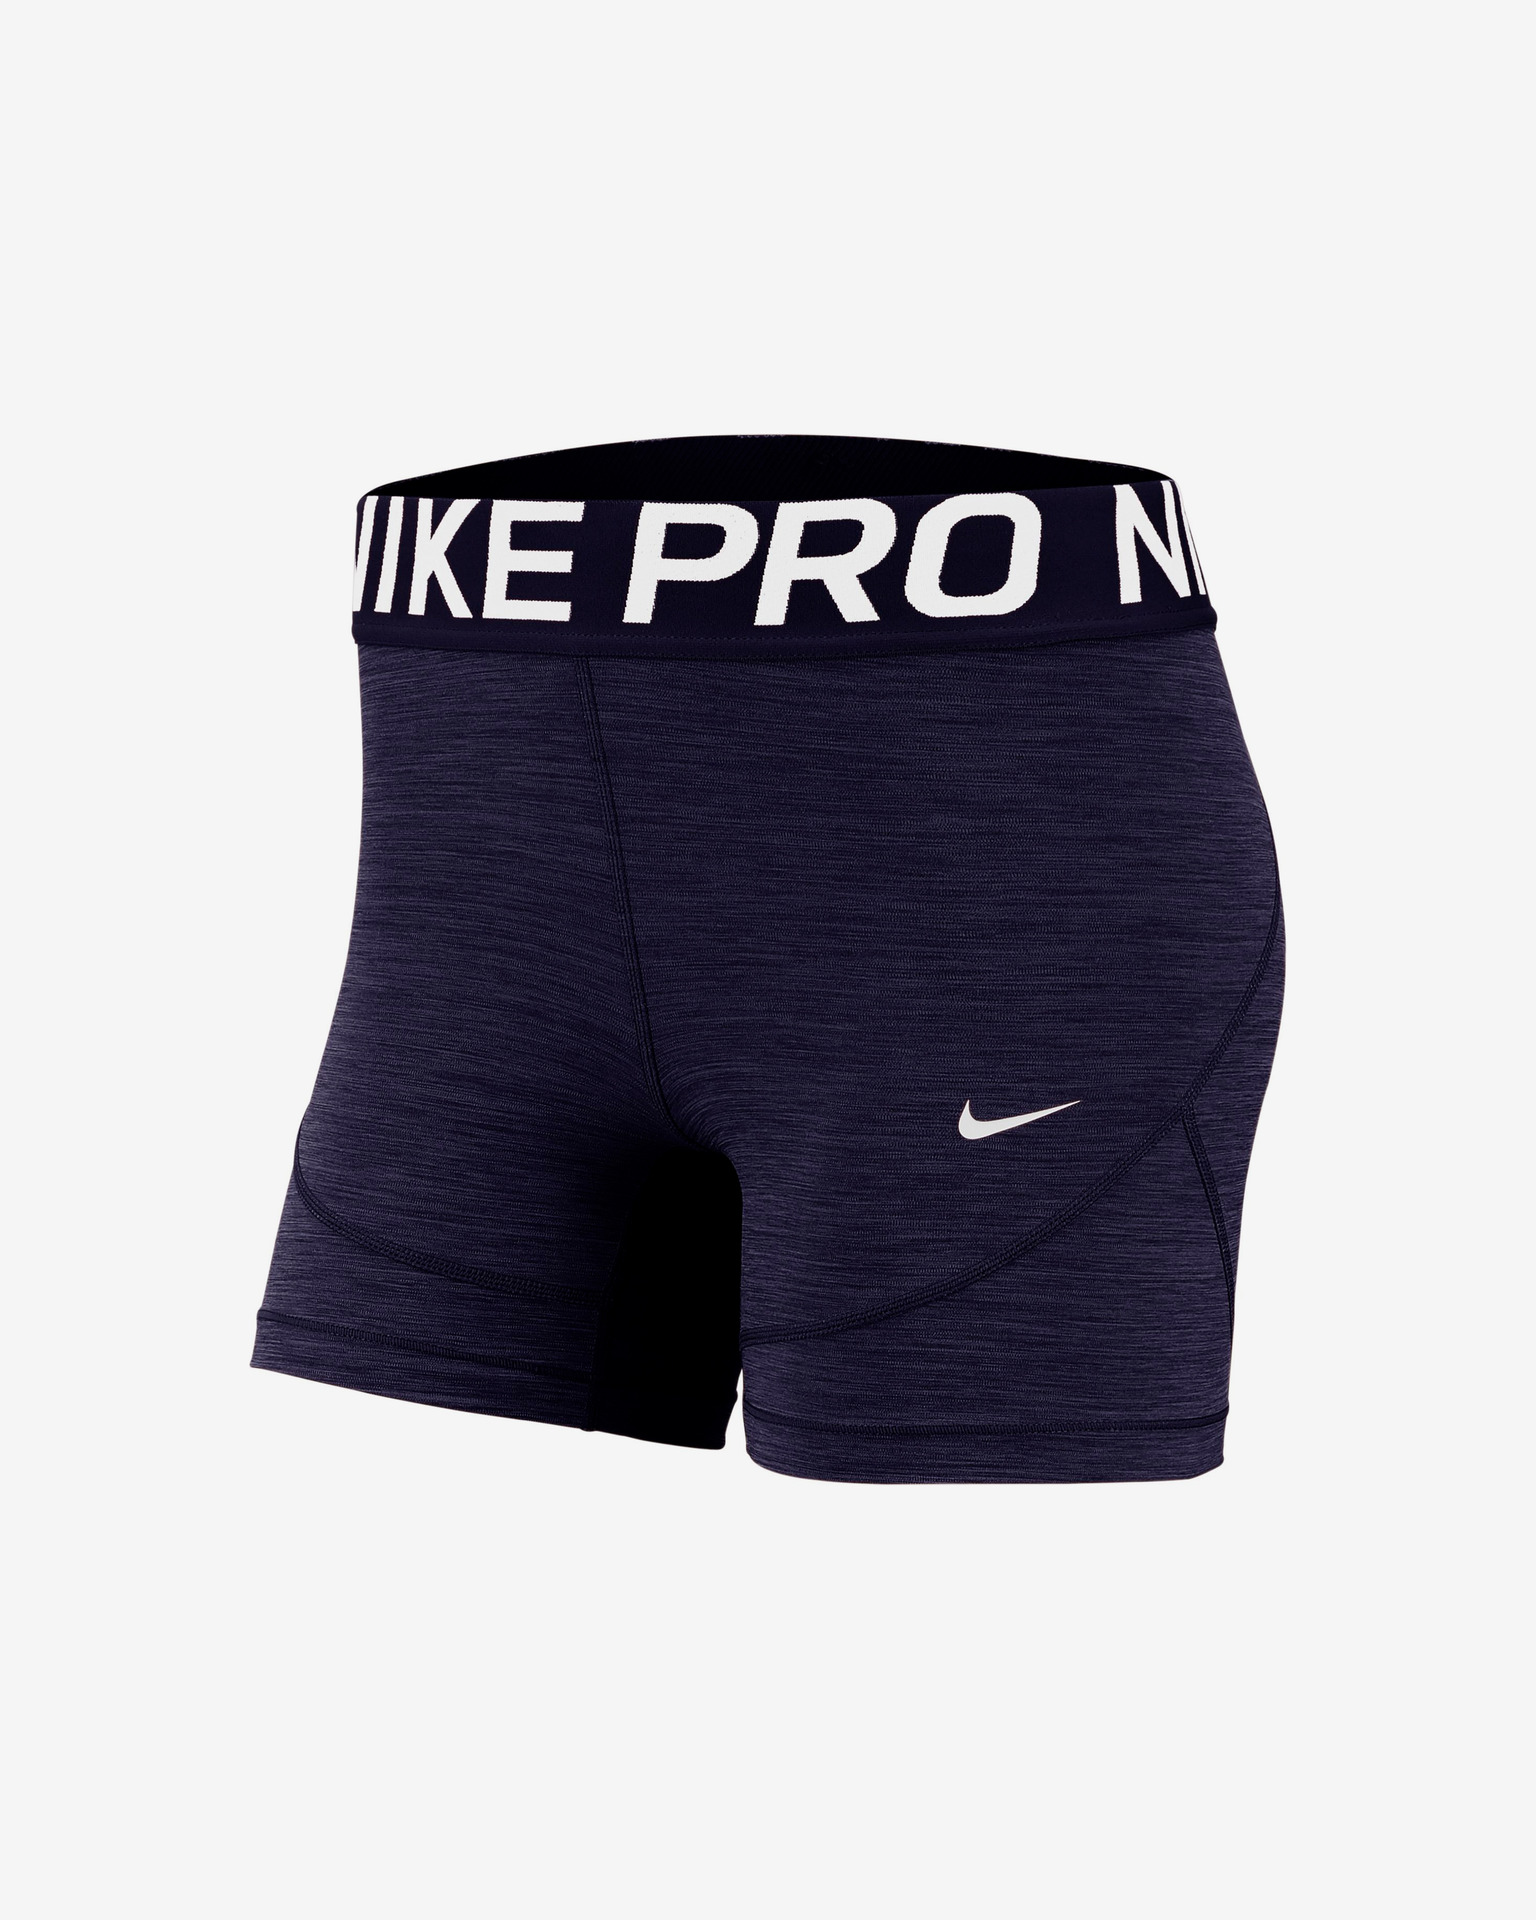 Voldoen Leven van Instituut Nike - Nike Pro Shorts Bibloo.nl